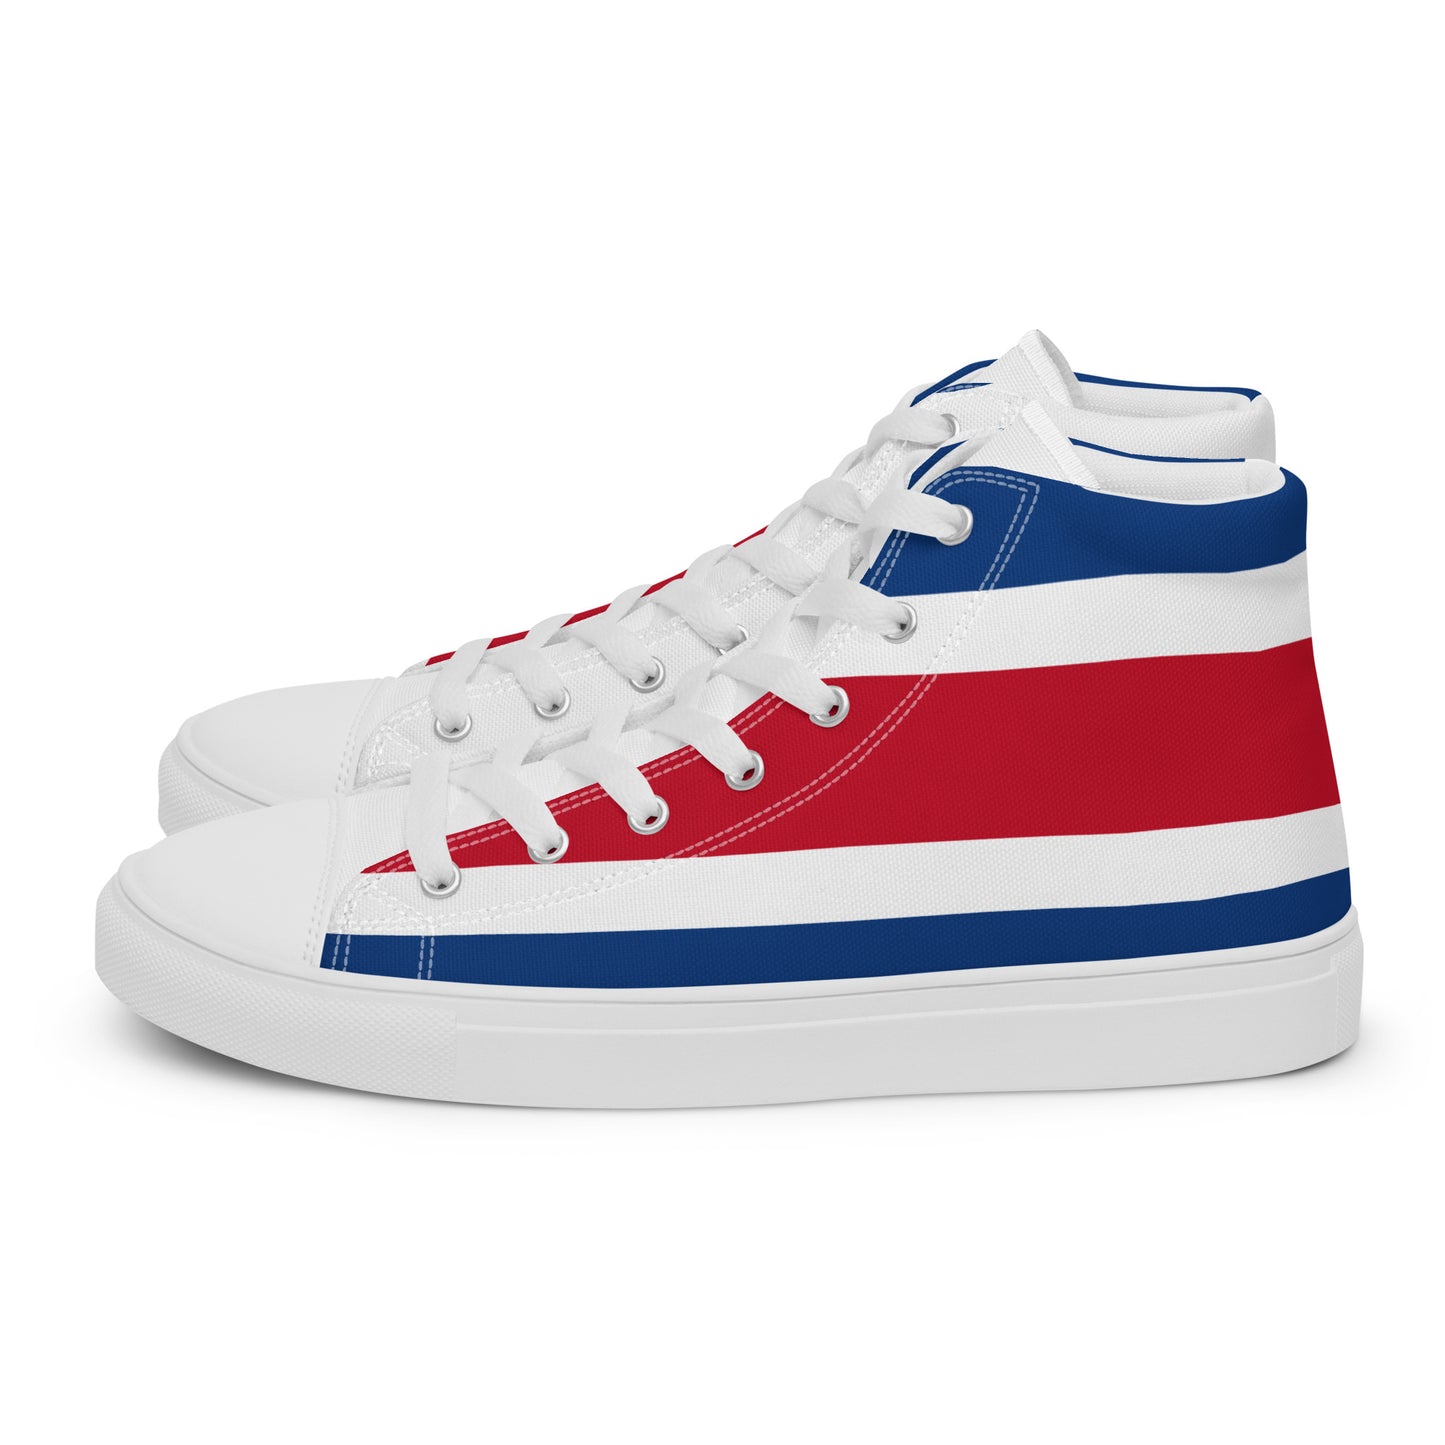 Costa Rica - Men - Bandera - High top shoes